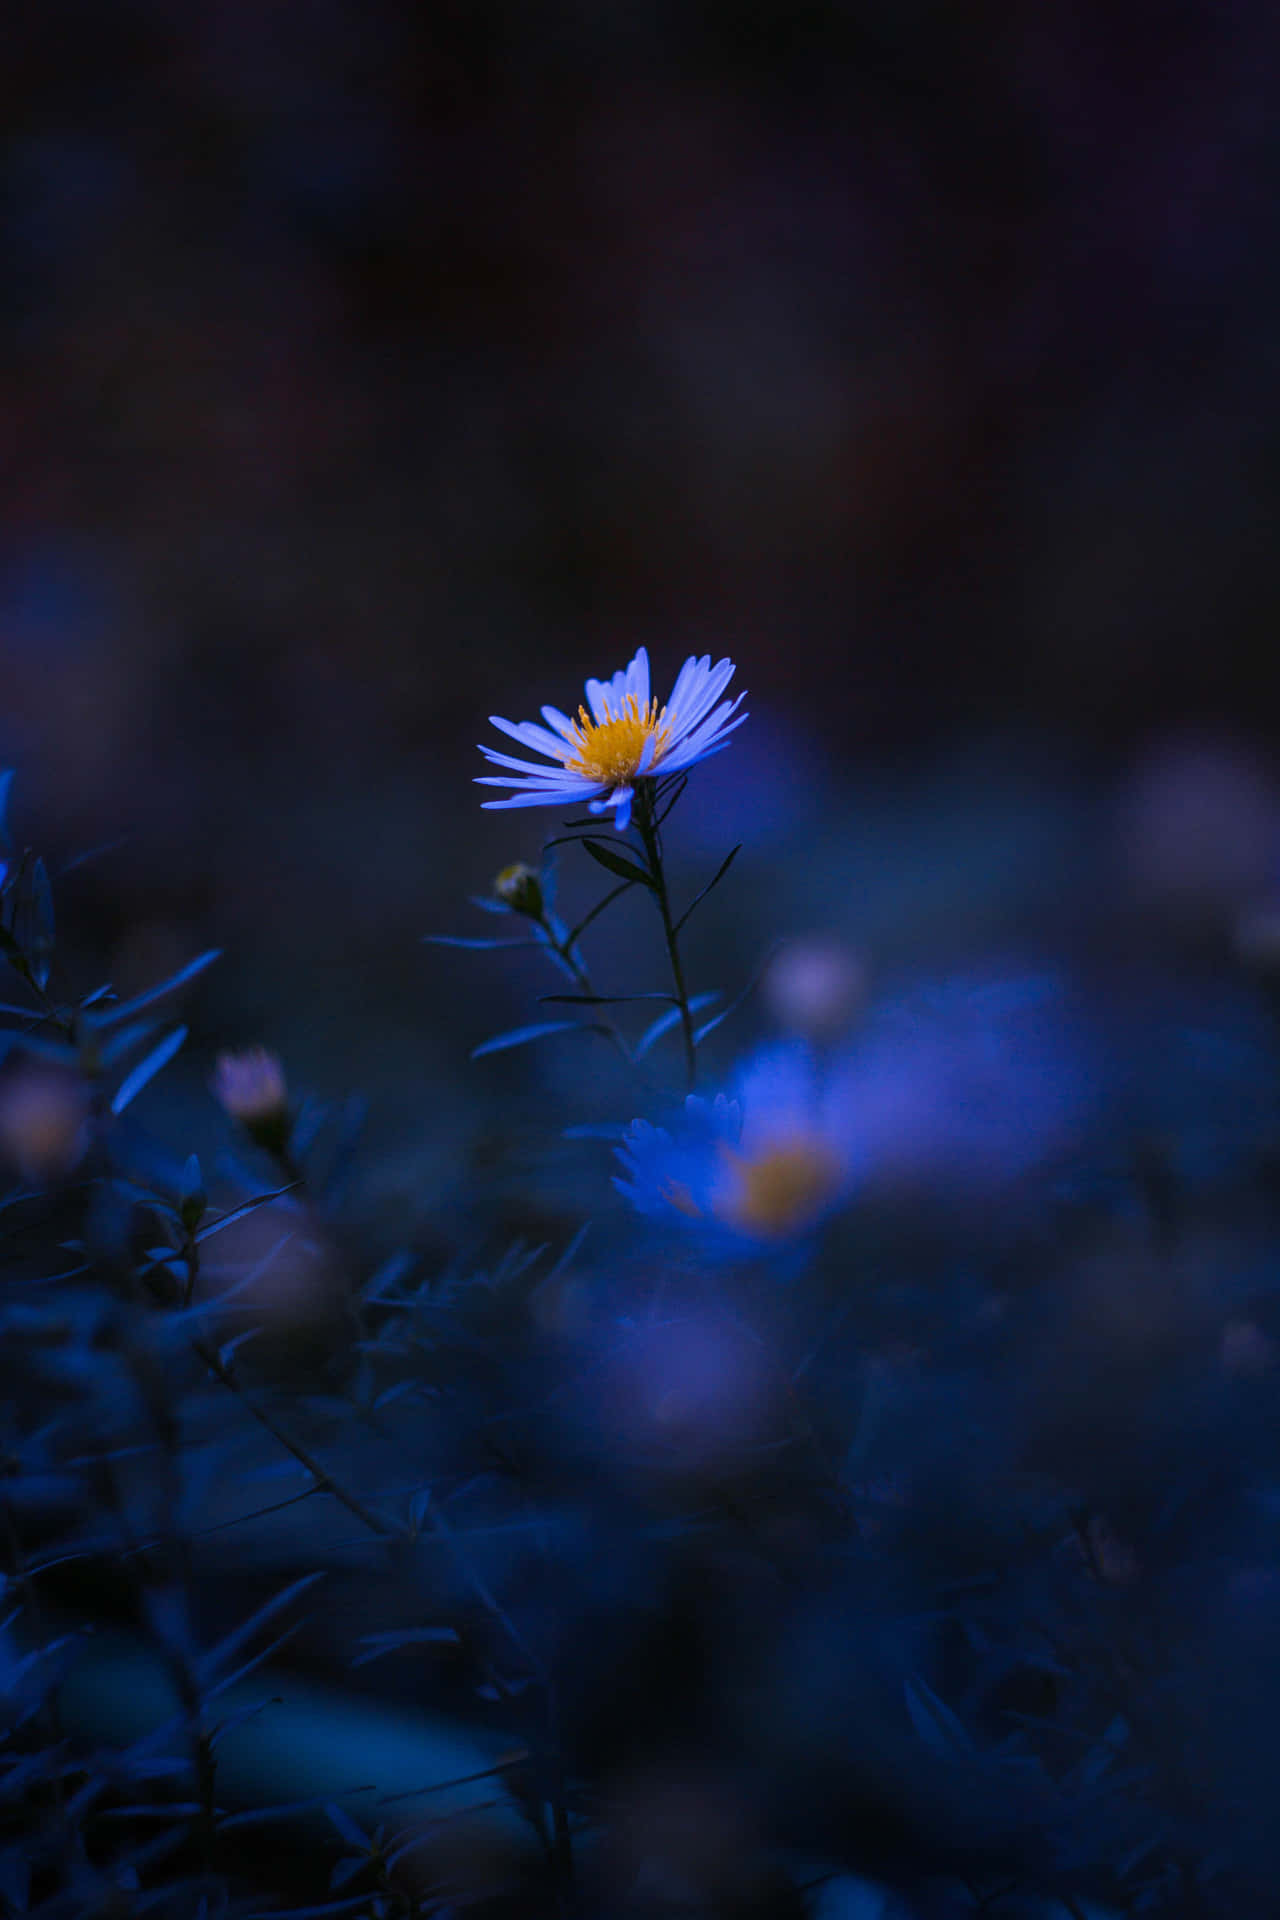 Aesthetic Blurred Flower In Dark Wallpaper